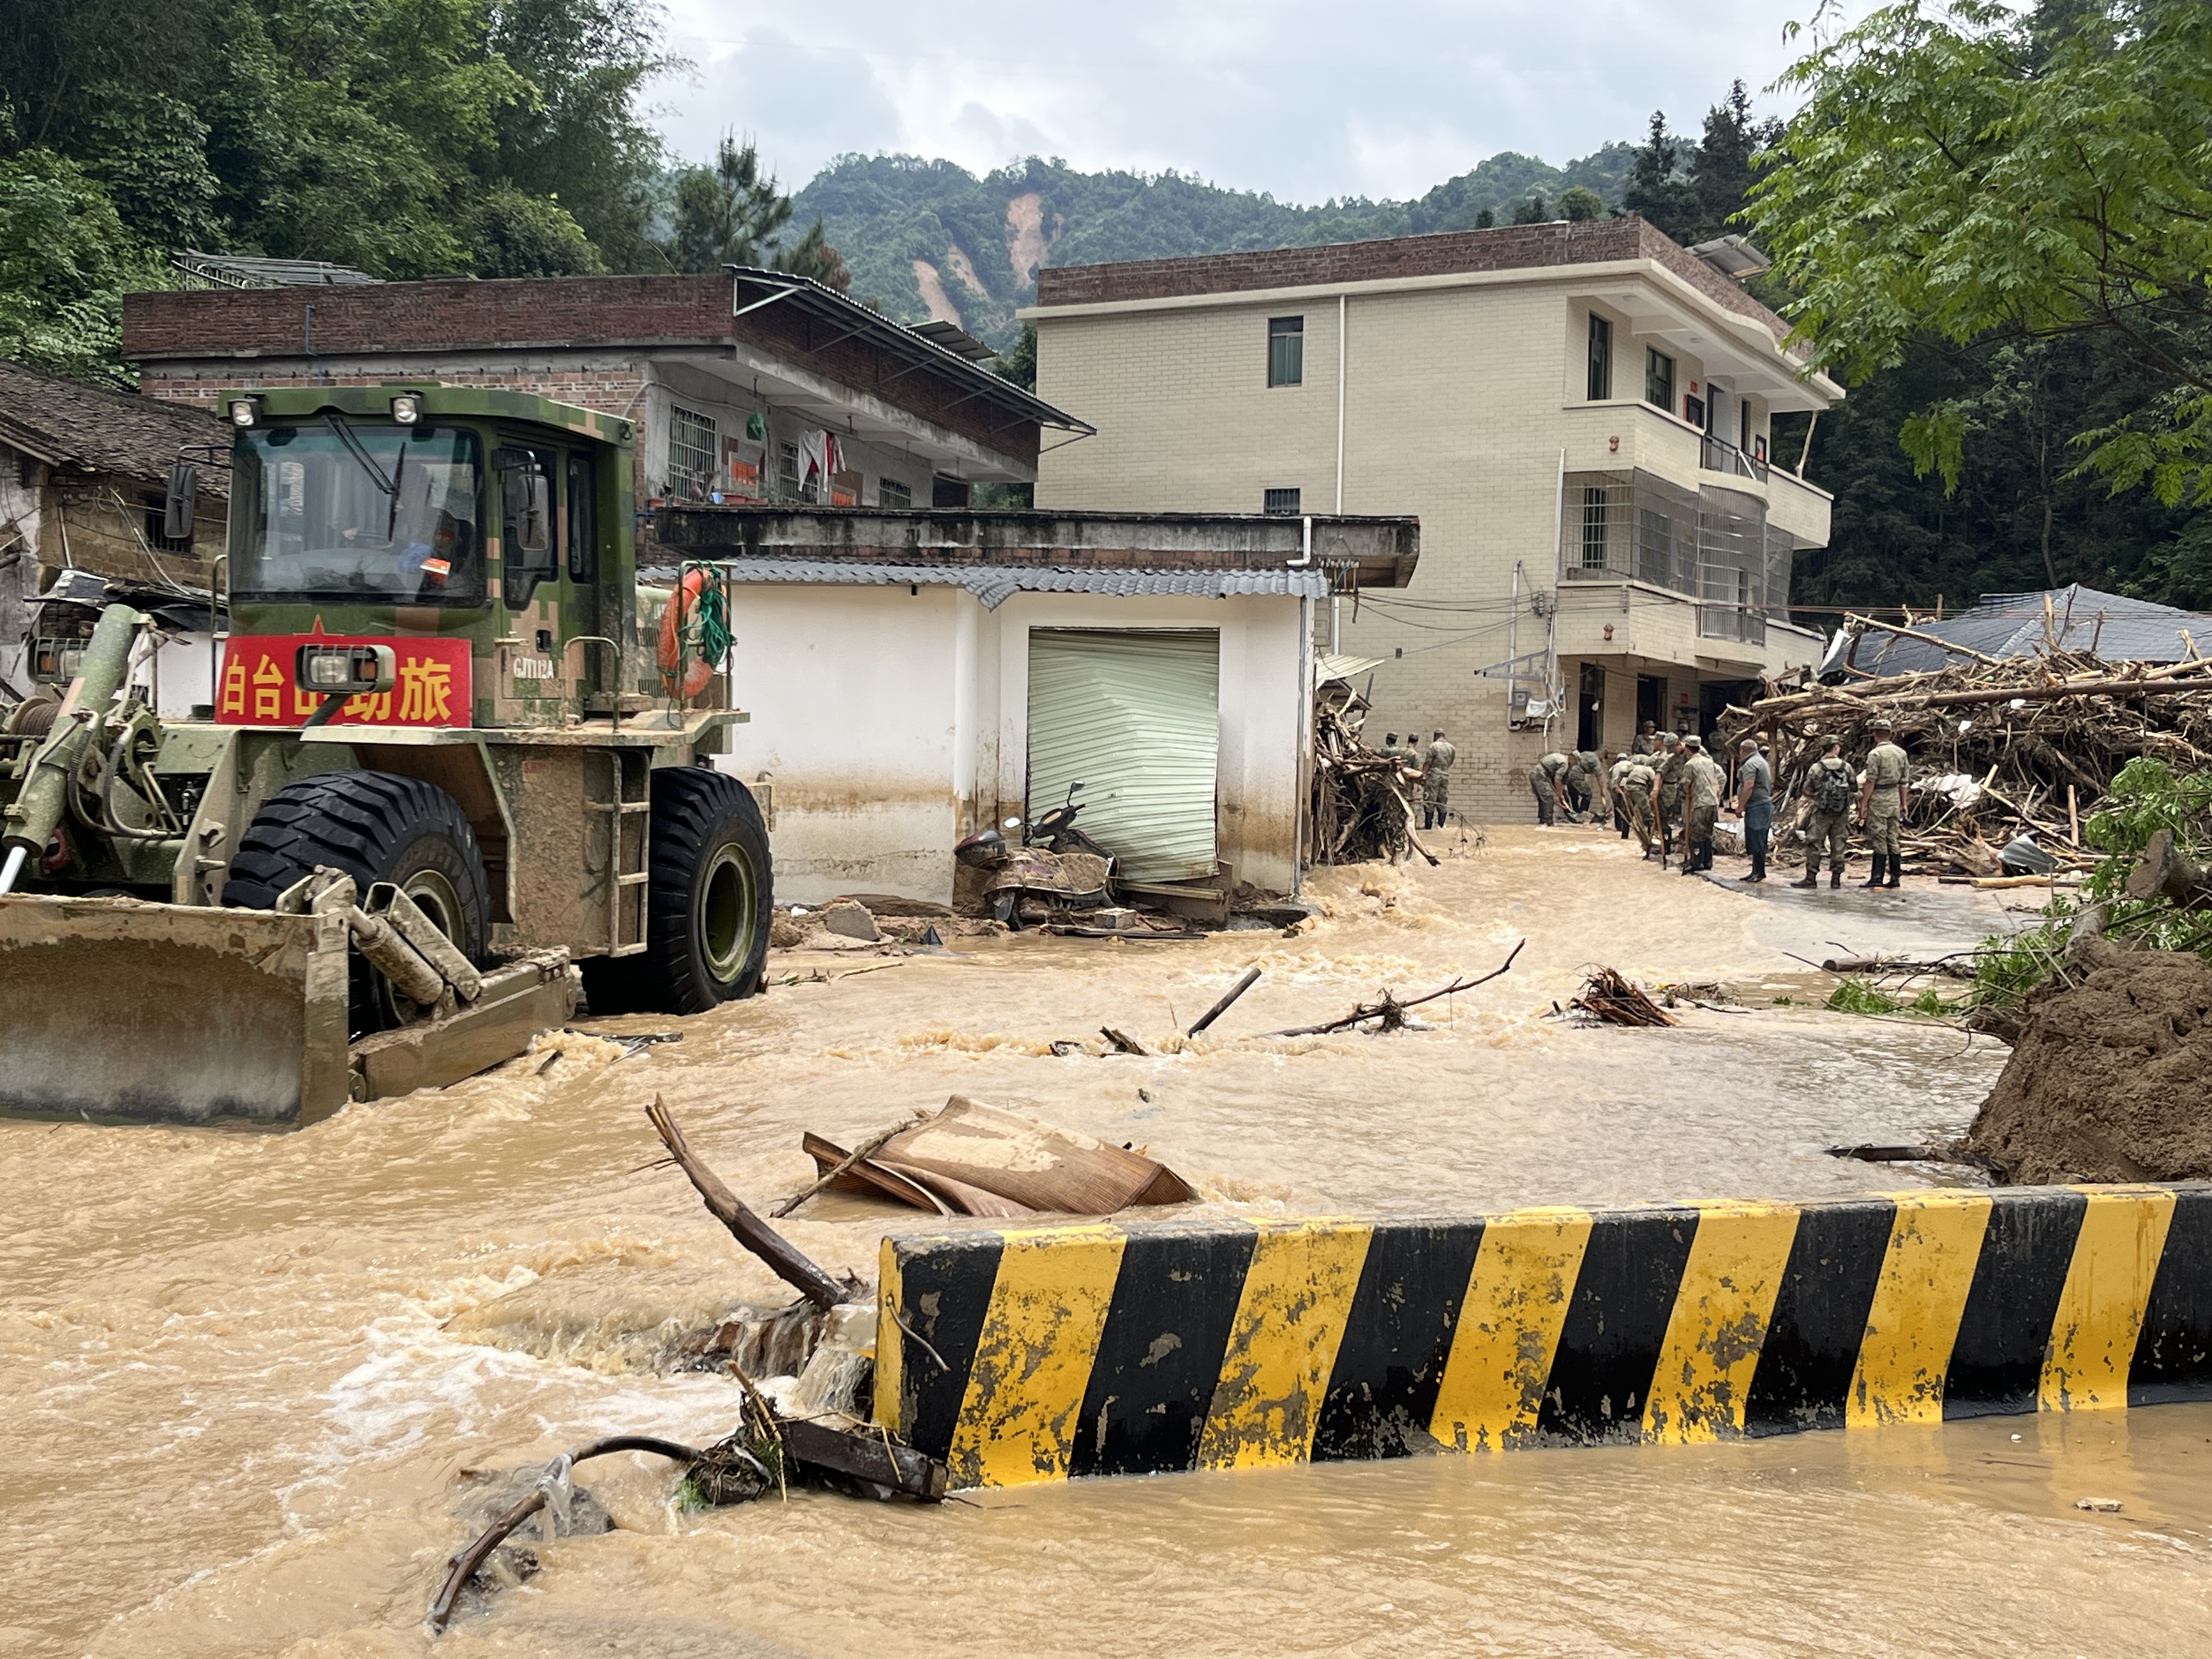 江湾镇街区入口处，洪水漫过318县道，给救援造成阻碍。  吴绵强 摄